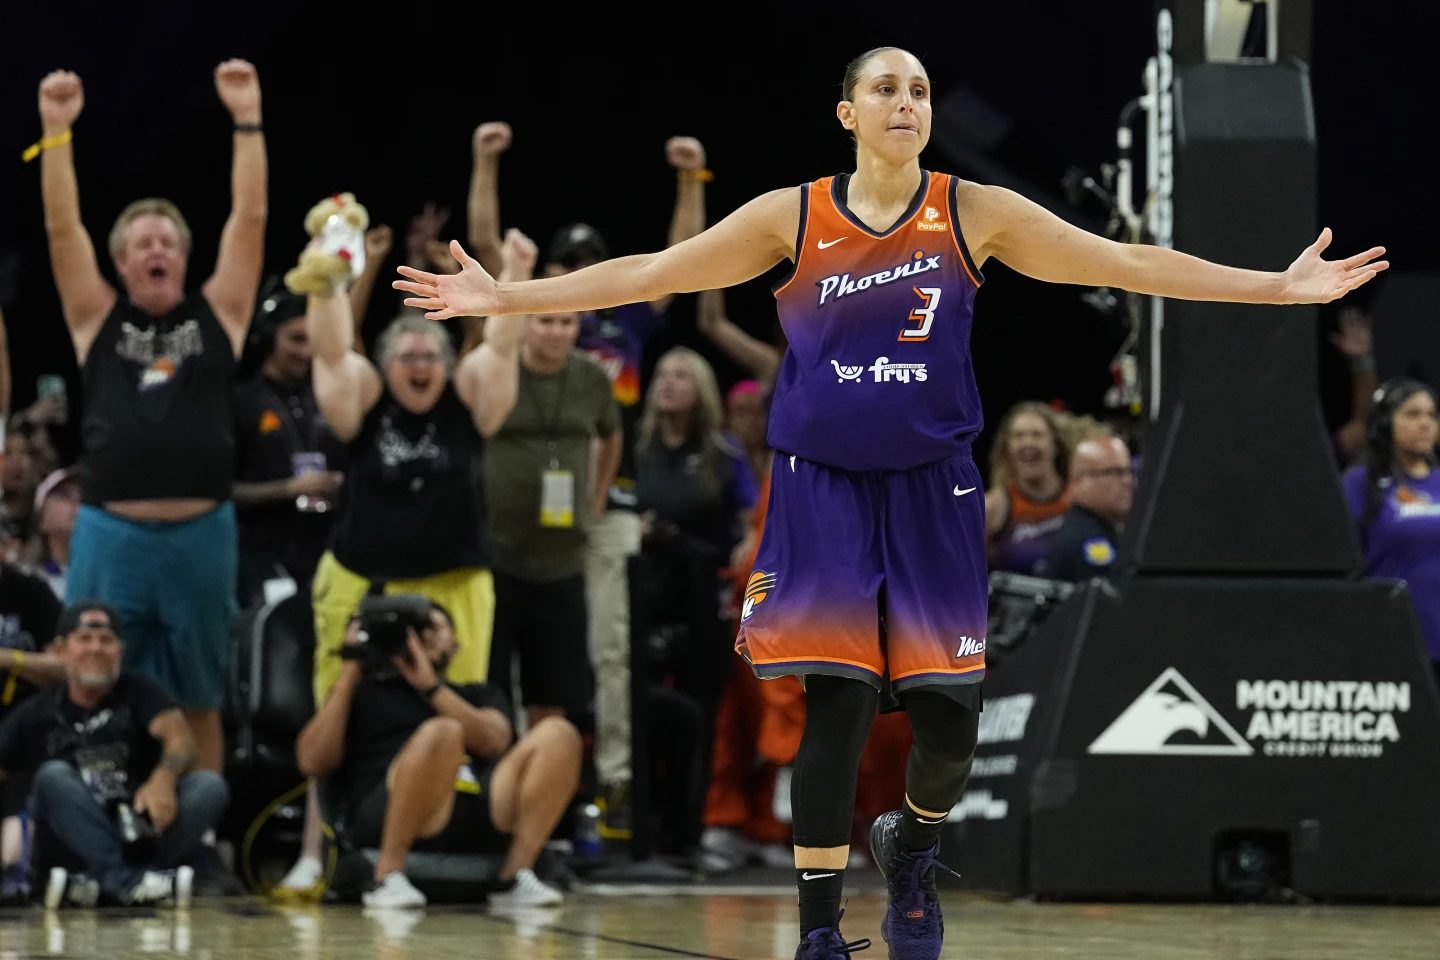 戴安娜·陶拉西成为第一位达到10000分的 WNBA 球员